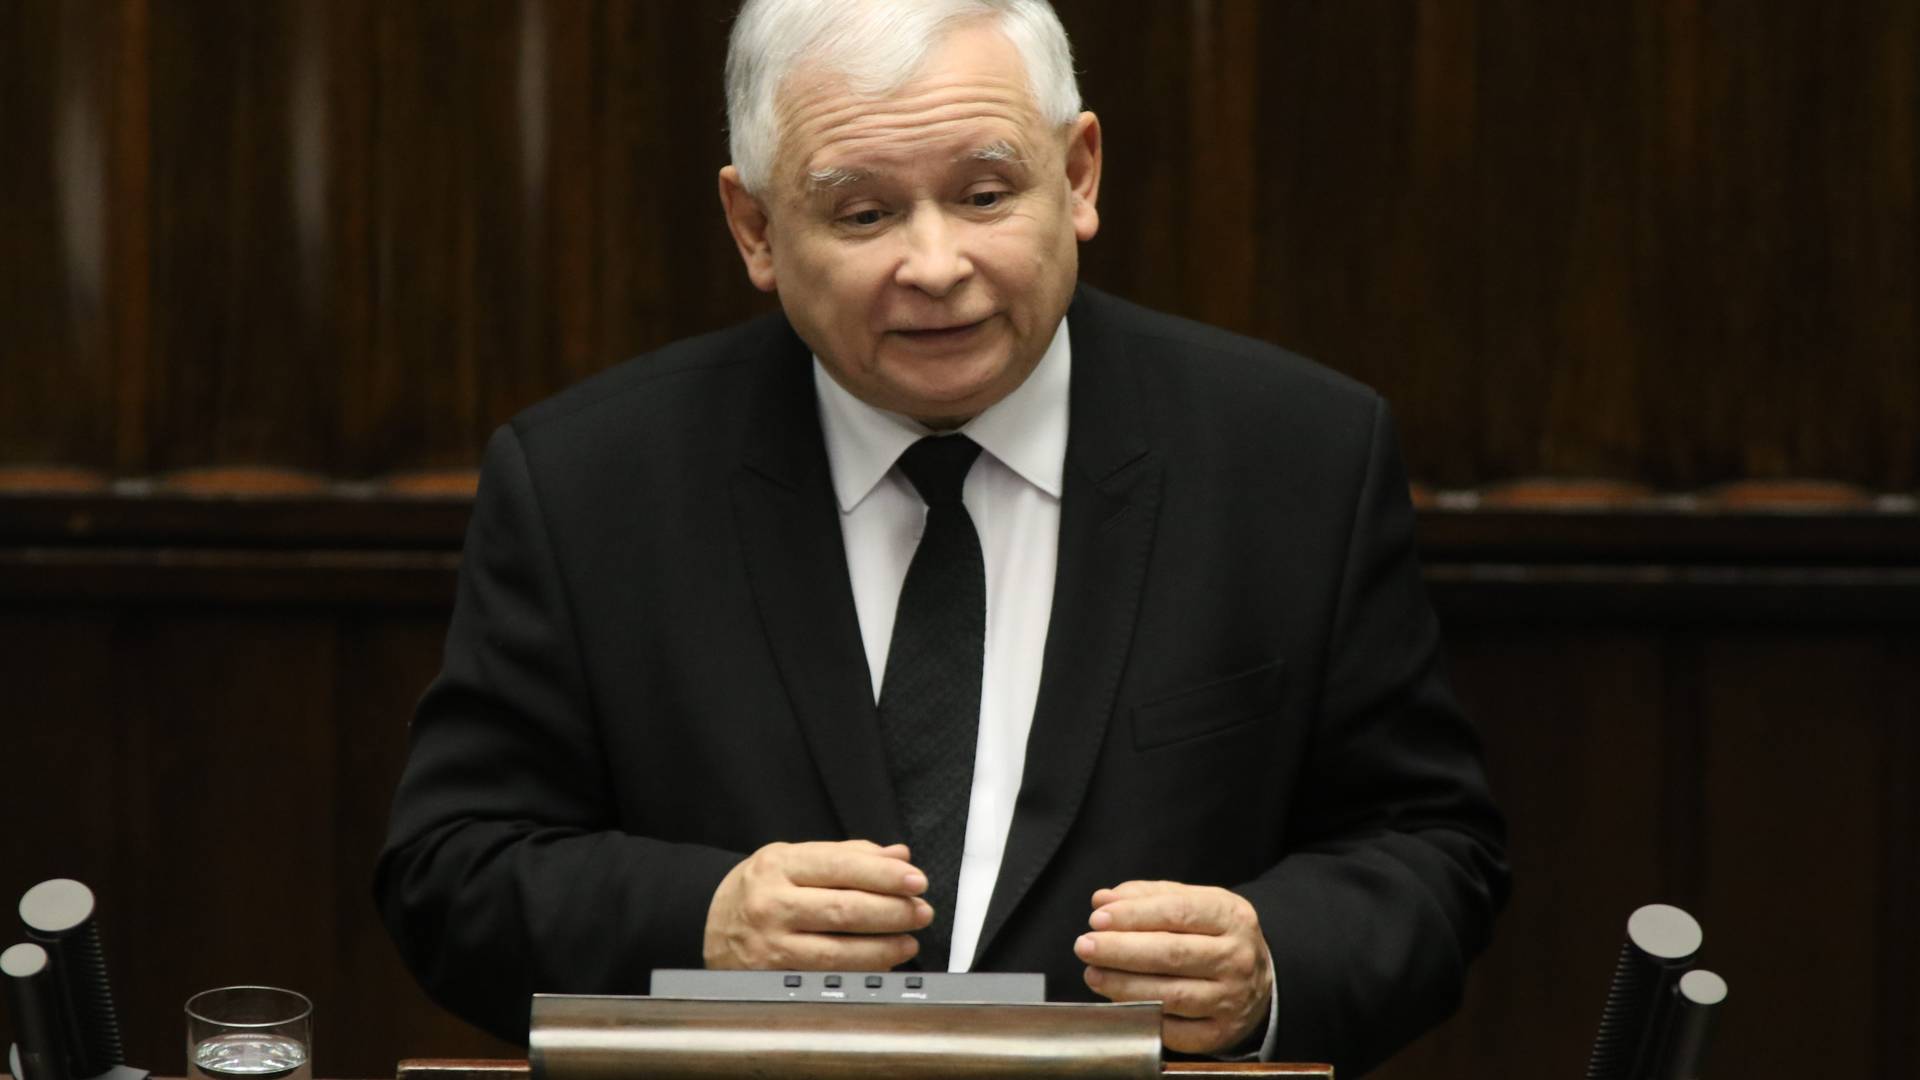 Kolejna burza o słowa Jarosława Kaczyńskiego. Po "gorszym sorcie" zaczął mówić o "gestapo"